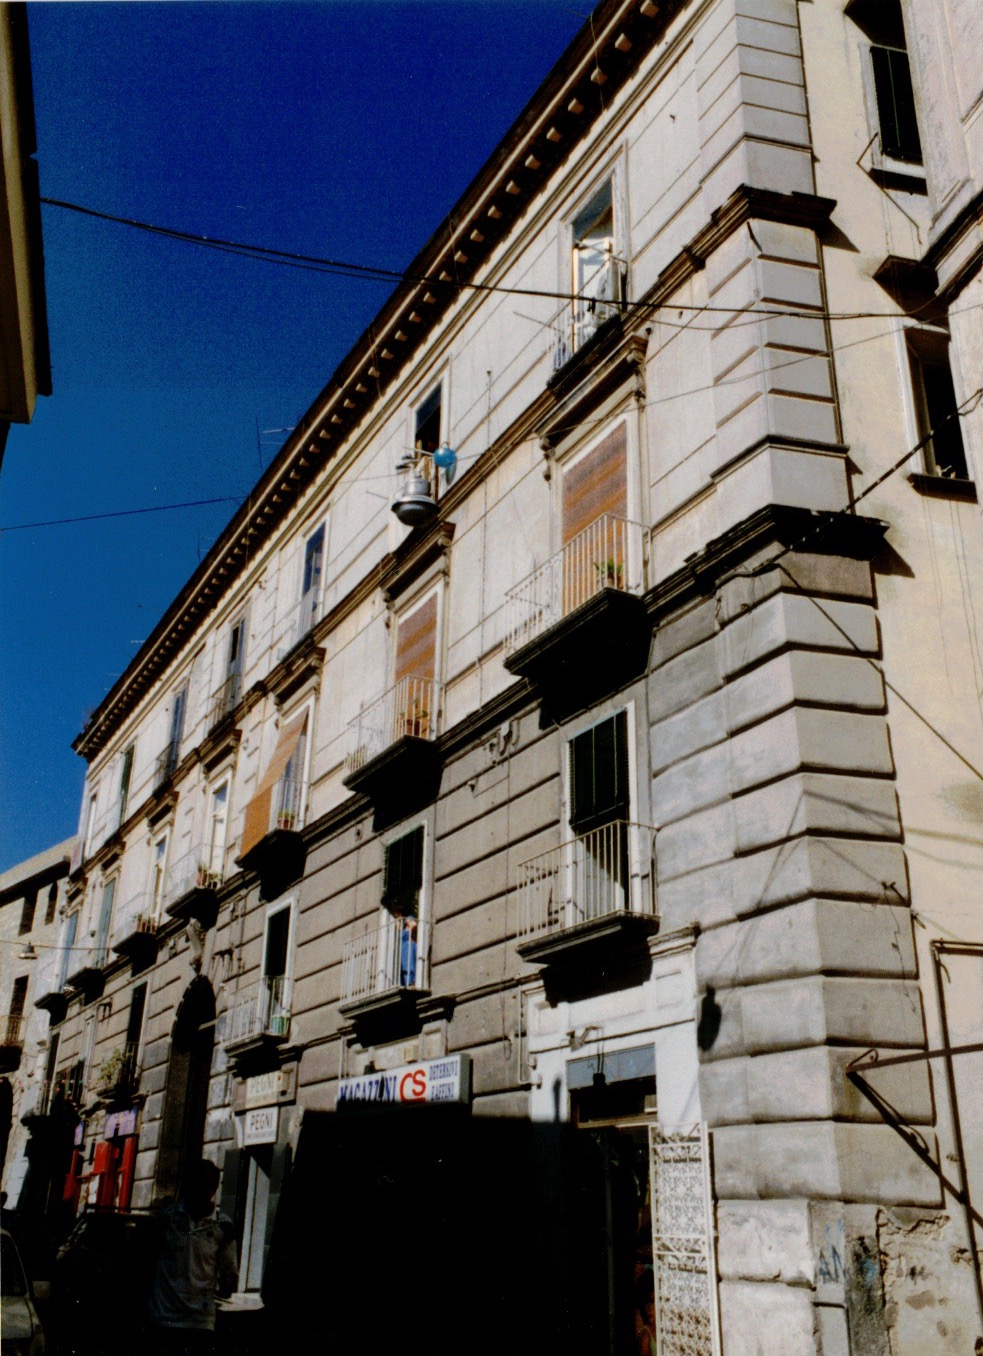 Palazzo privato in via Cavour, 6 (palazzo, civico) - Casoria (NA) 